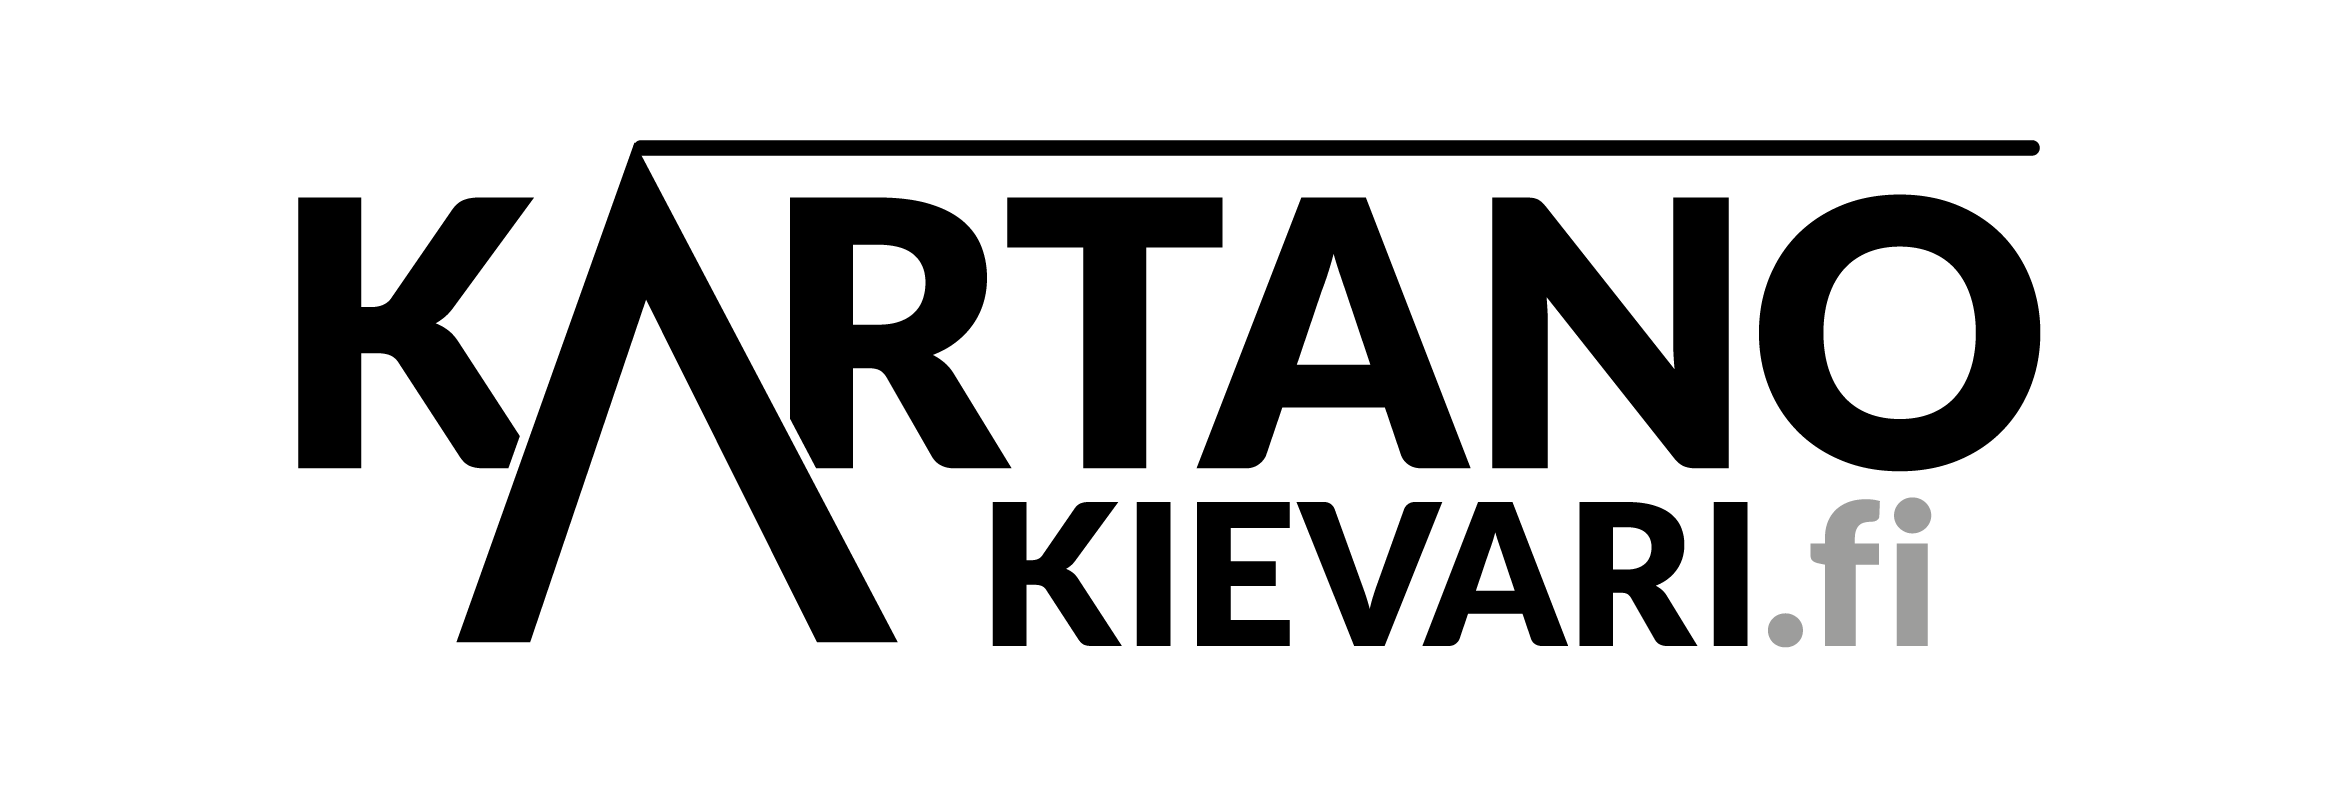 Kartano Kievarin logo läpinäkyvällä pohjalla